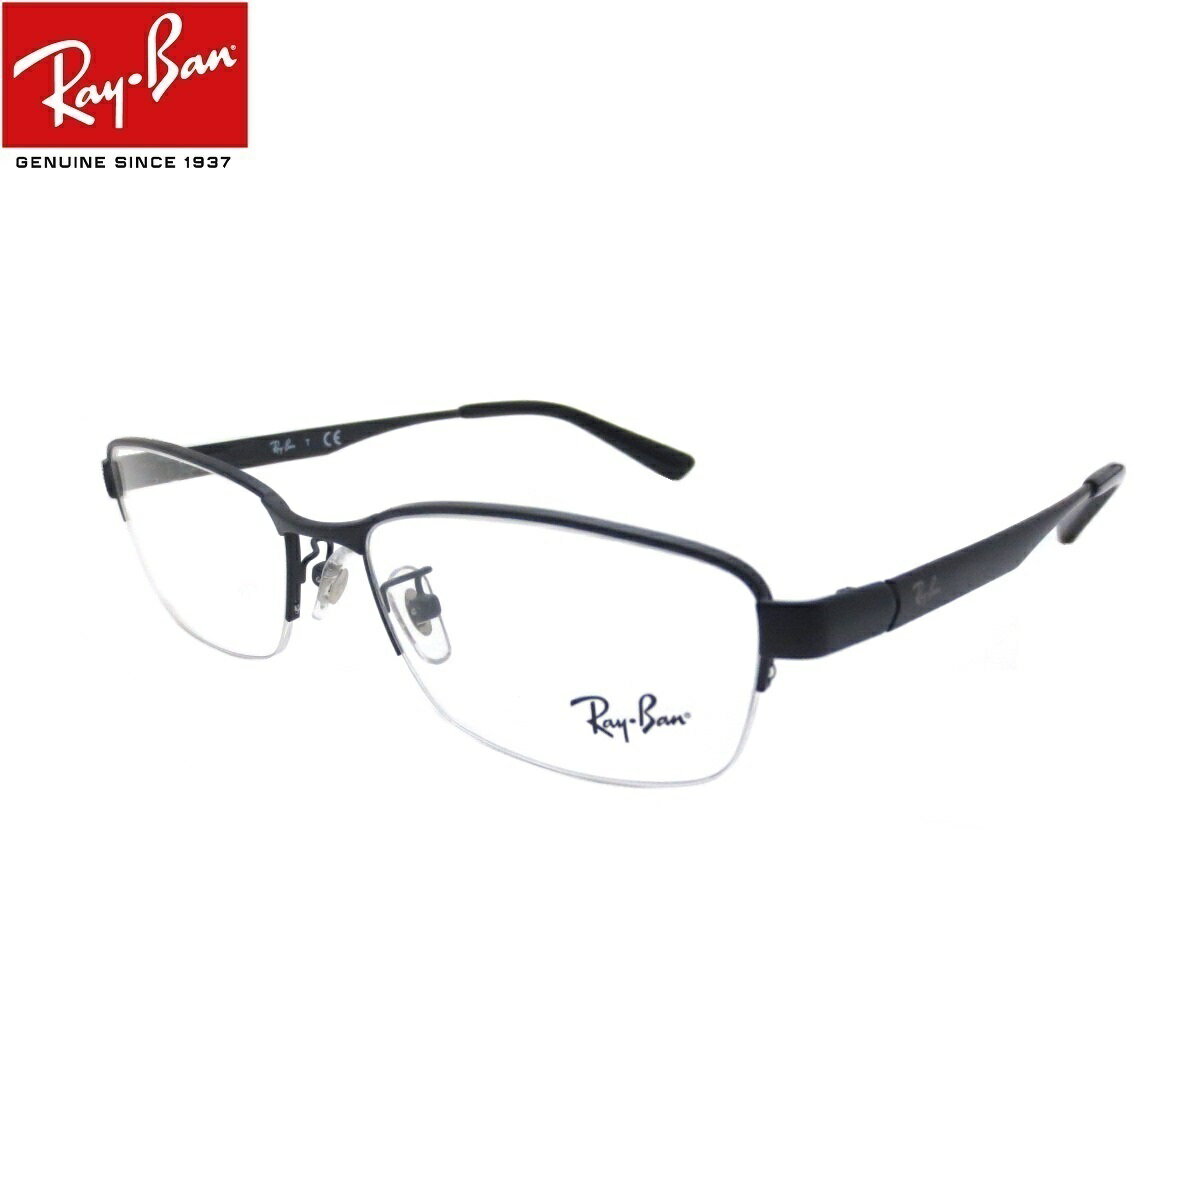 レイバン Ray-Ban 老眼鏡 シニアグラス メガネ (レイバン Ray-Ban）RX6453D 2503(サイズ55)UVカットレンズ付き クリアレンズ 【あす楽対応】